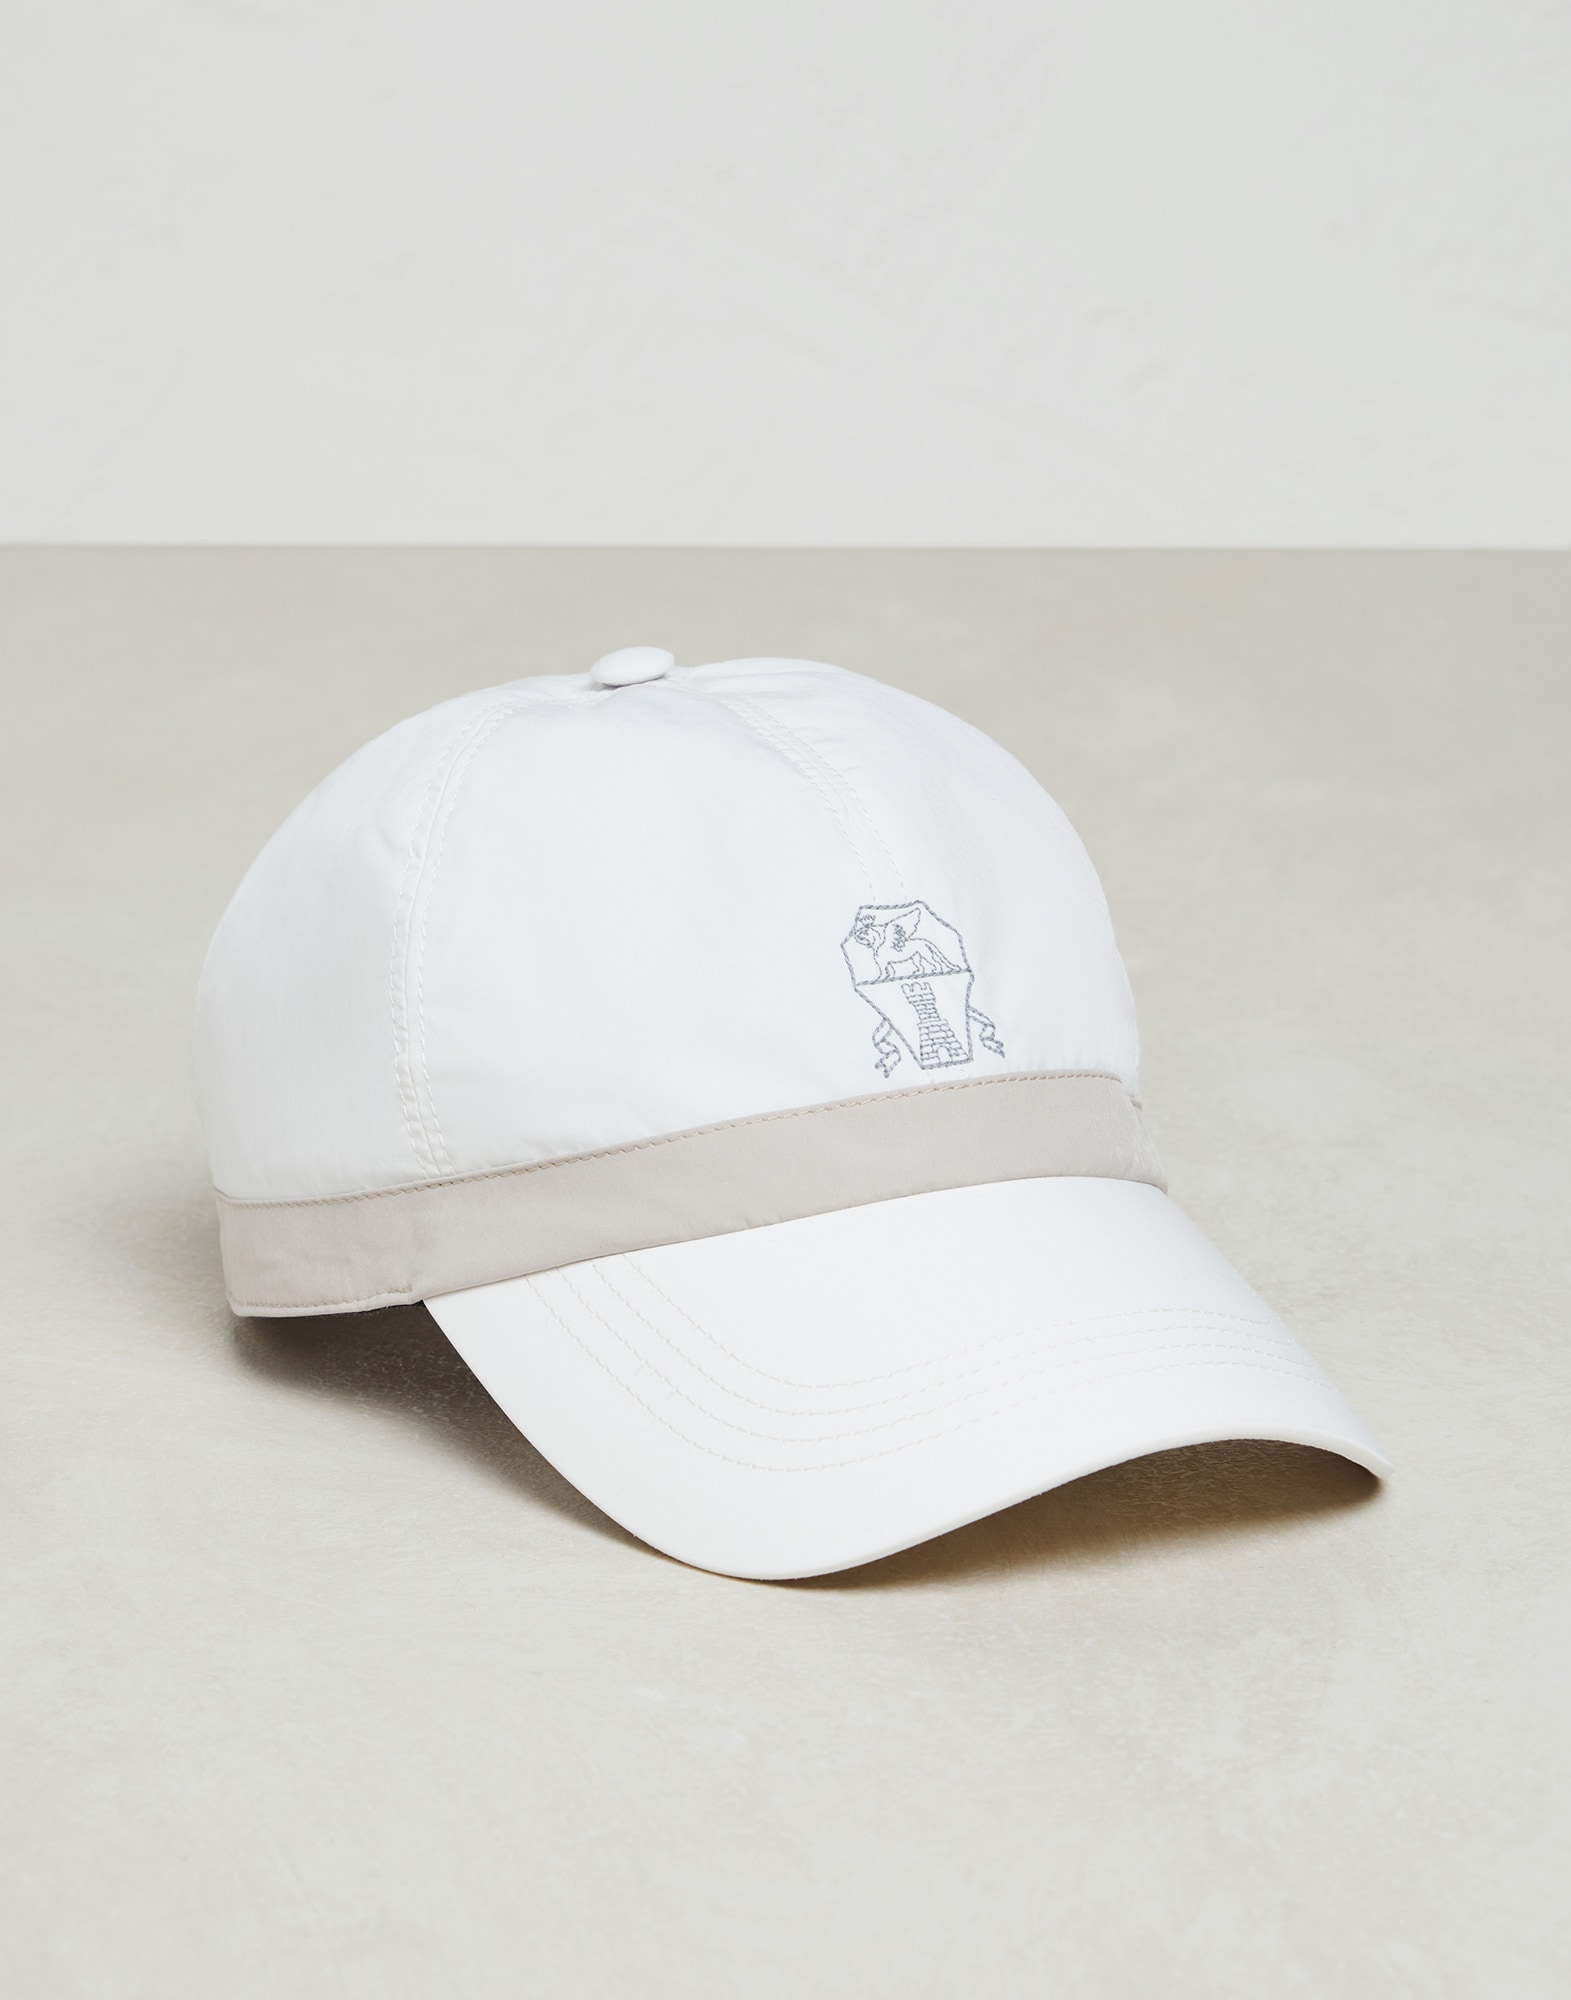 Water-resistant baseball cap